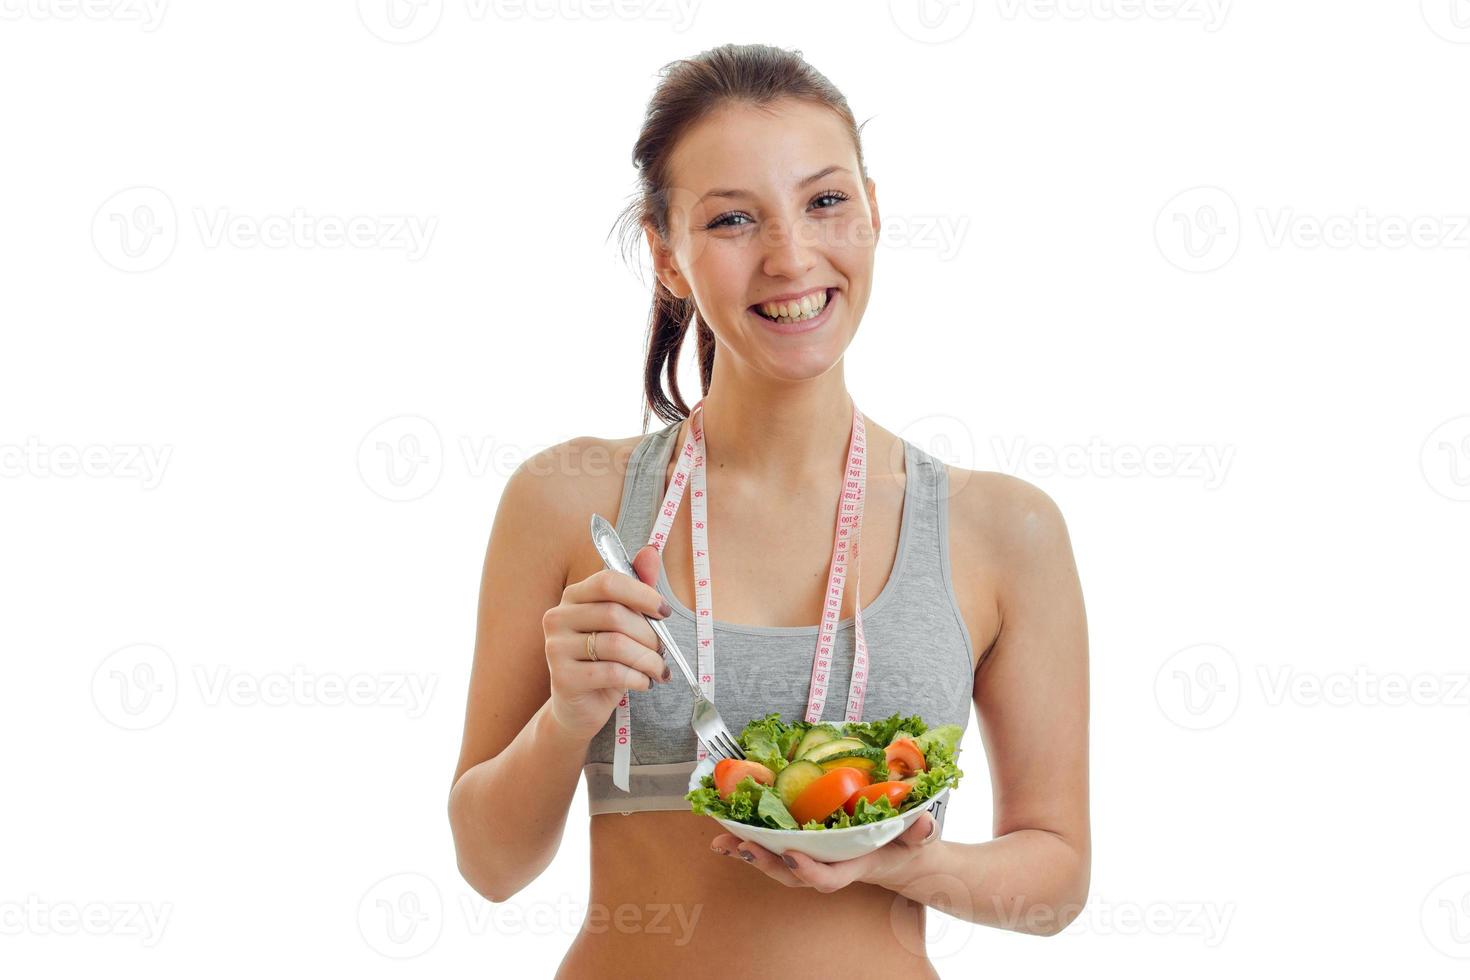 mooi gelukkig meisje op zoek in de camera, lachend en Holding een bord met groente salade detailopname foto